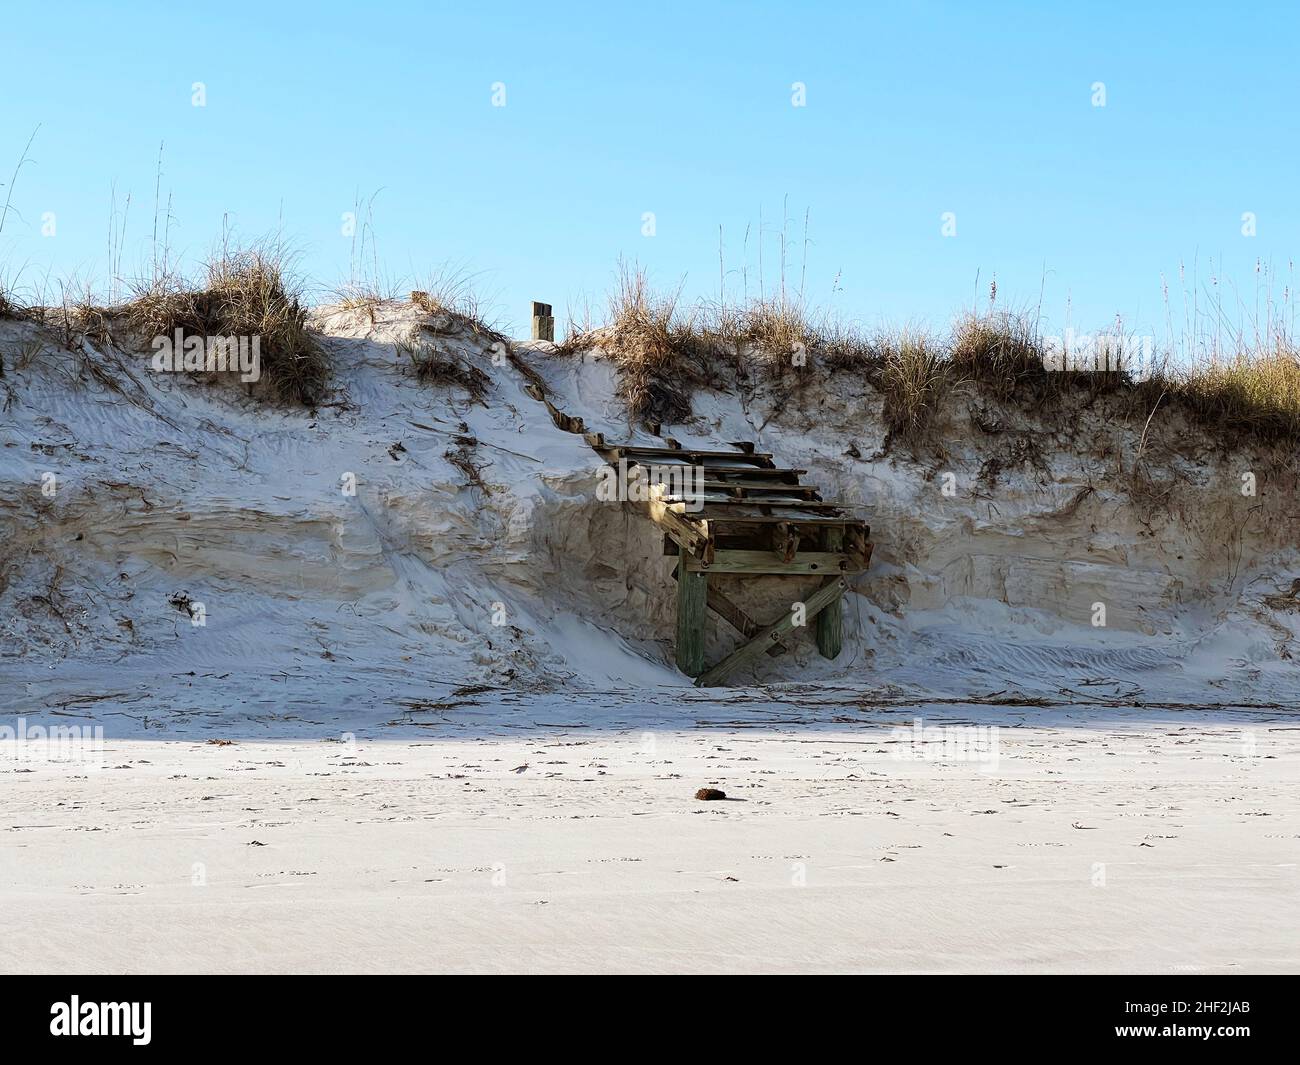 Danneggiati dalla continua erosione a causa di tempeste e l'aumento dei livelli del mare, i gradini di accesso alla spiaggia sono stati lavati all'estremità sud di Jekyll Island, Georgia, USA. Foto Stock